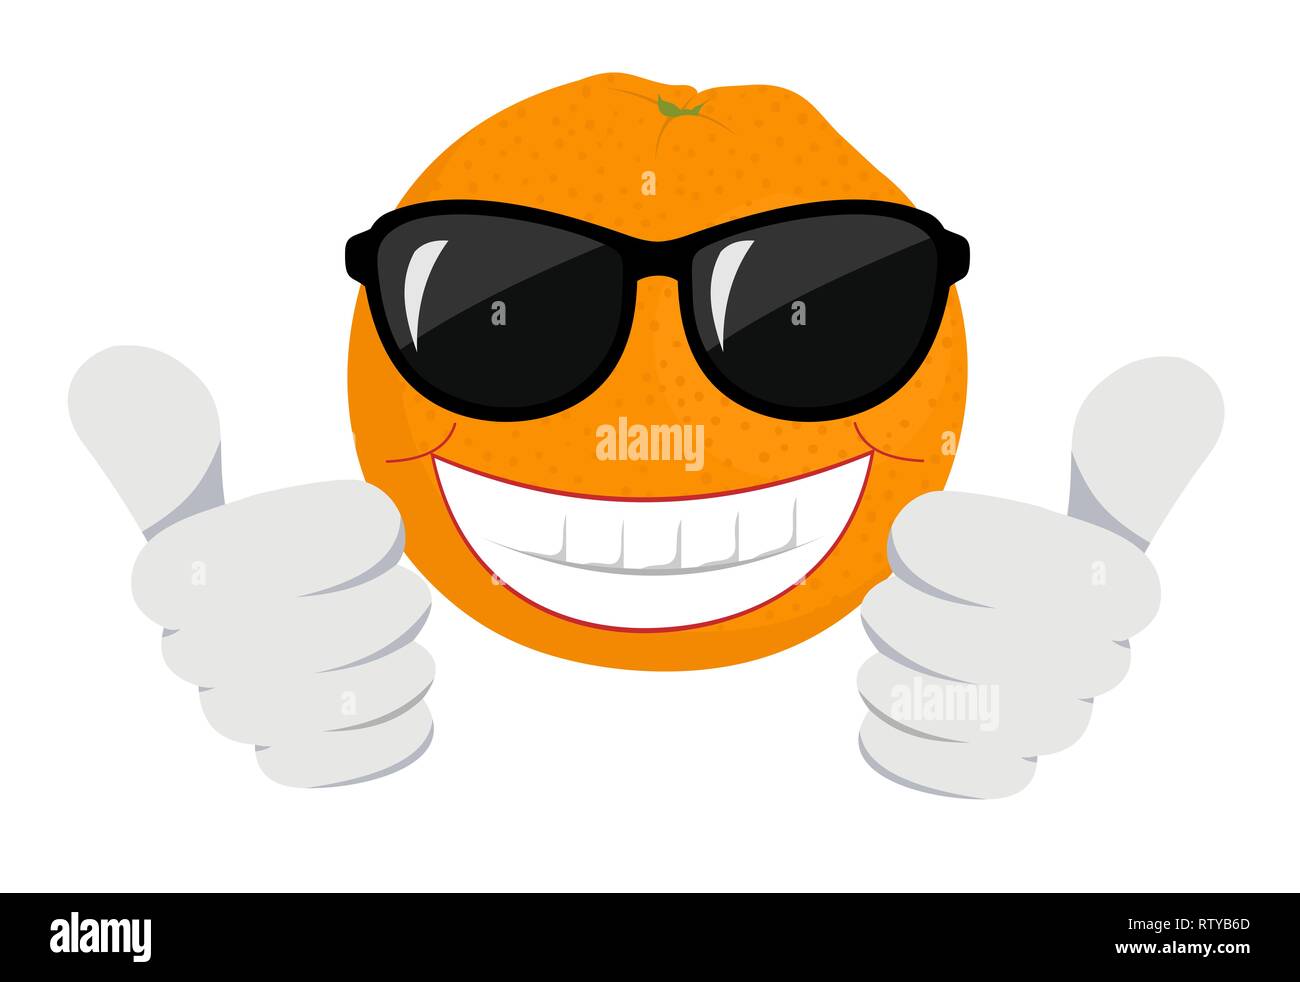 Fruta naranja Cartoon mascota personaje con gafas de sol dando un pulgar hacia arriba. Raster ilustración sobre fondo blanco. Foto de stock